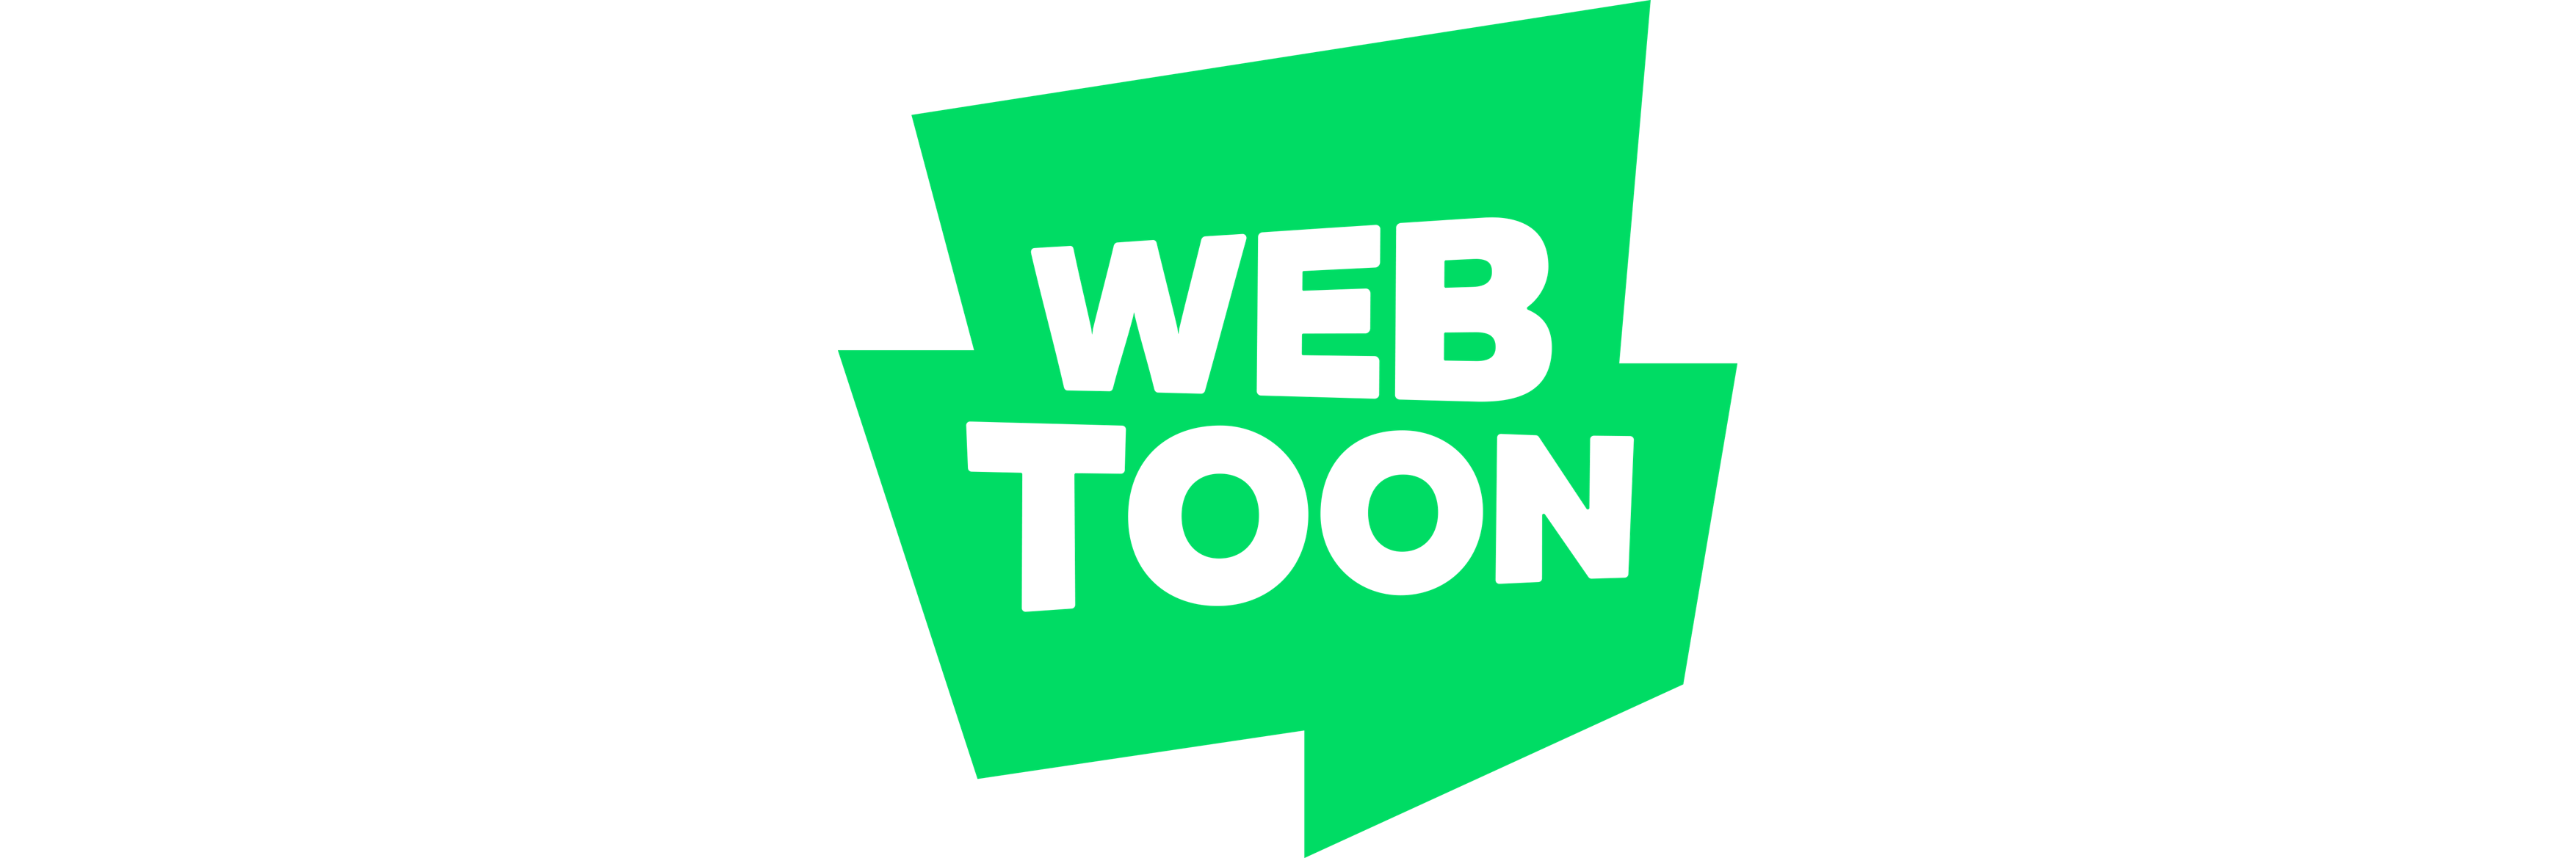 Webtoons